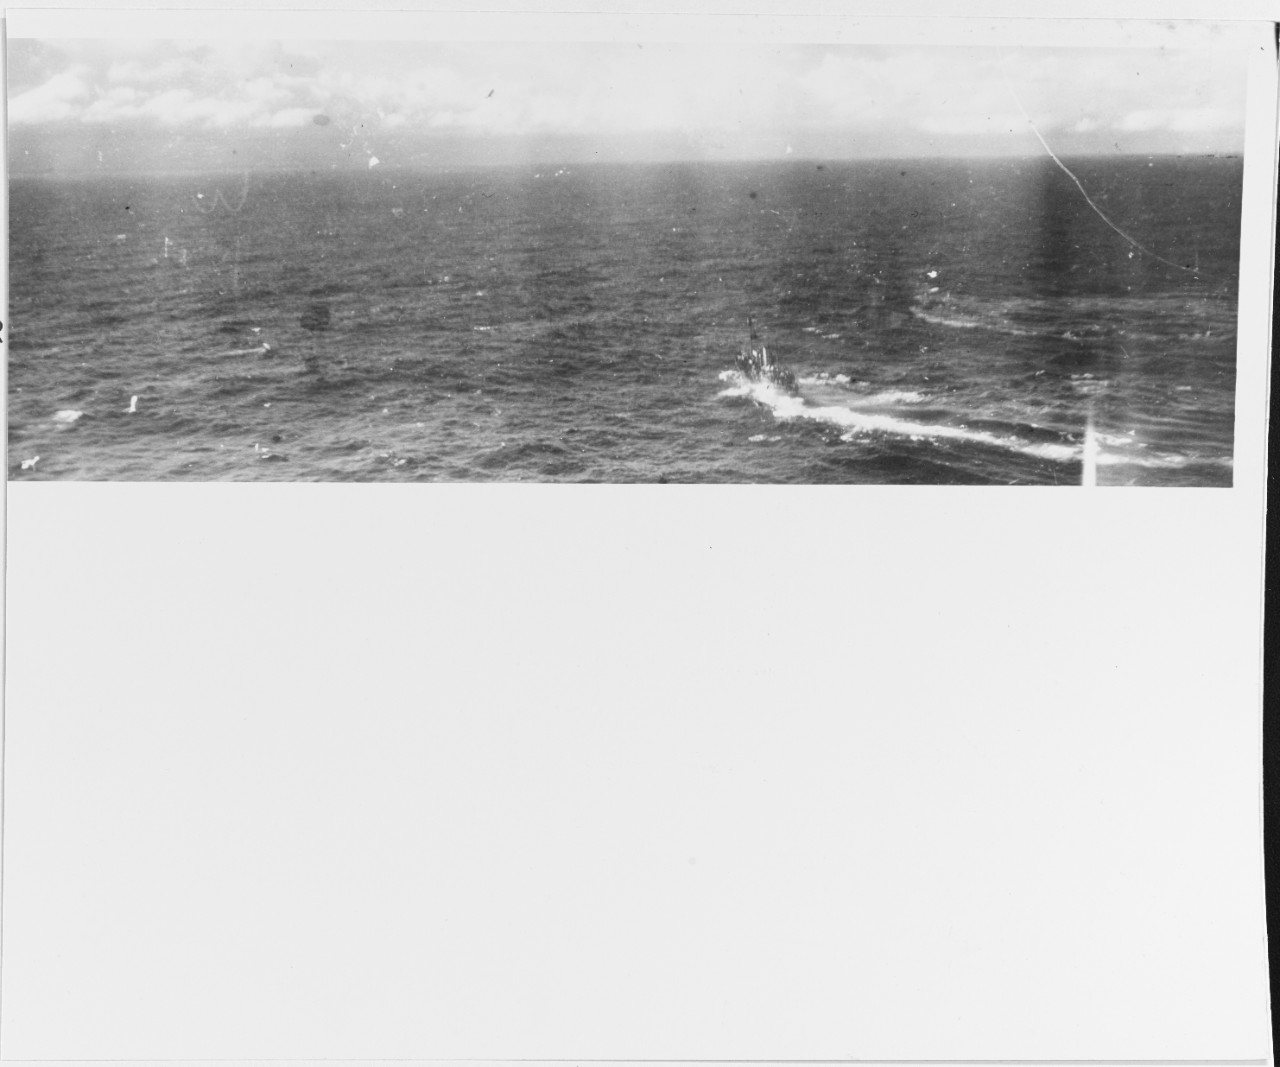 TF-58 Marianas Raid, February 1944